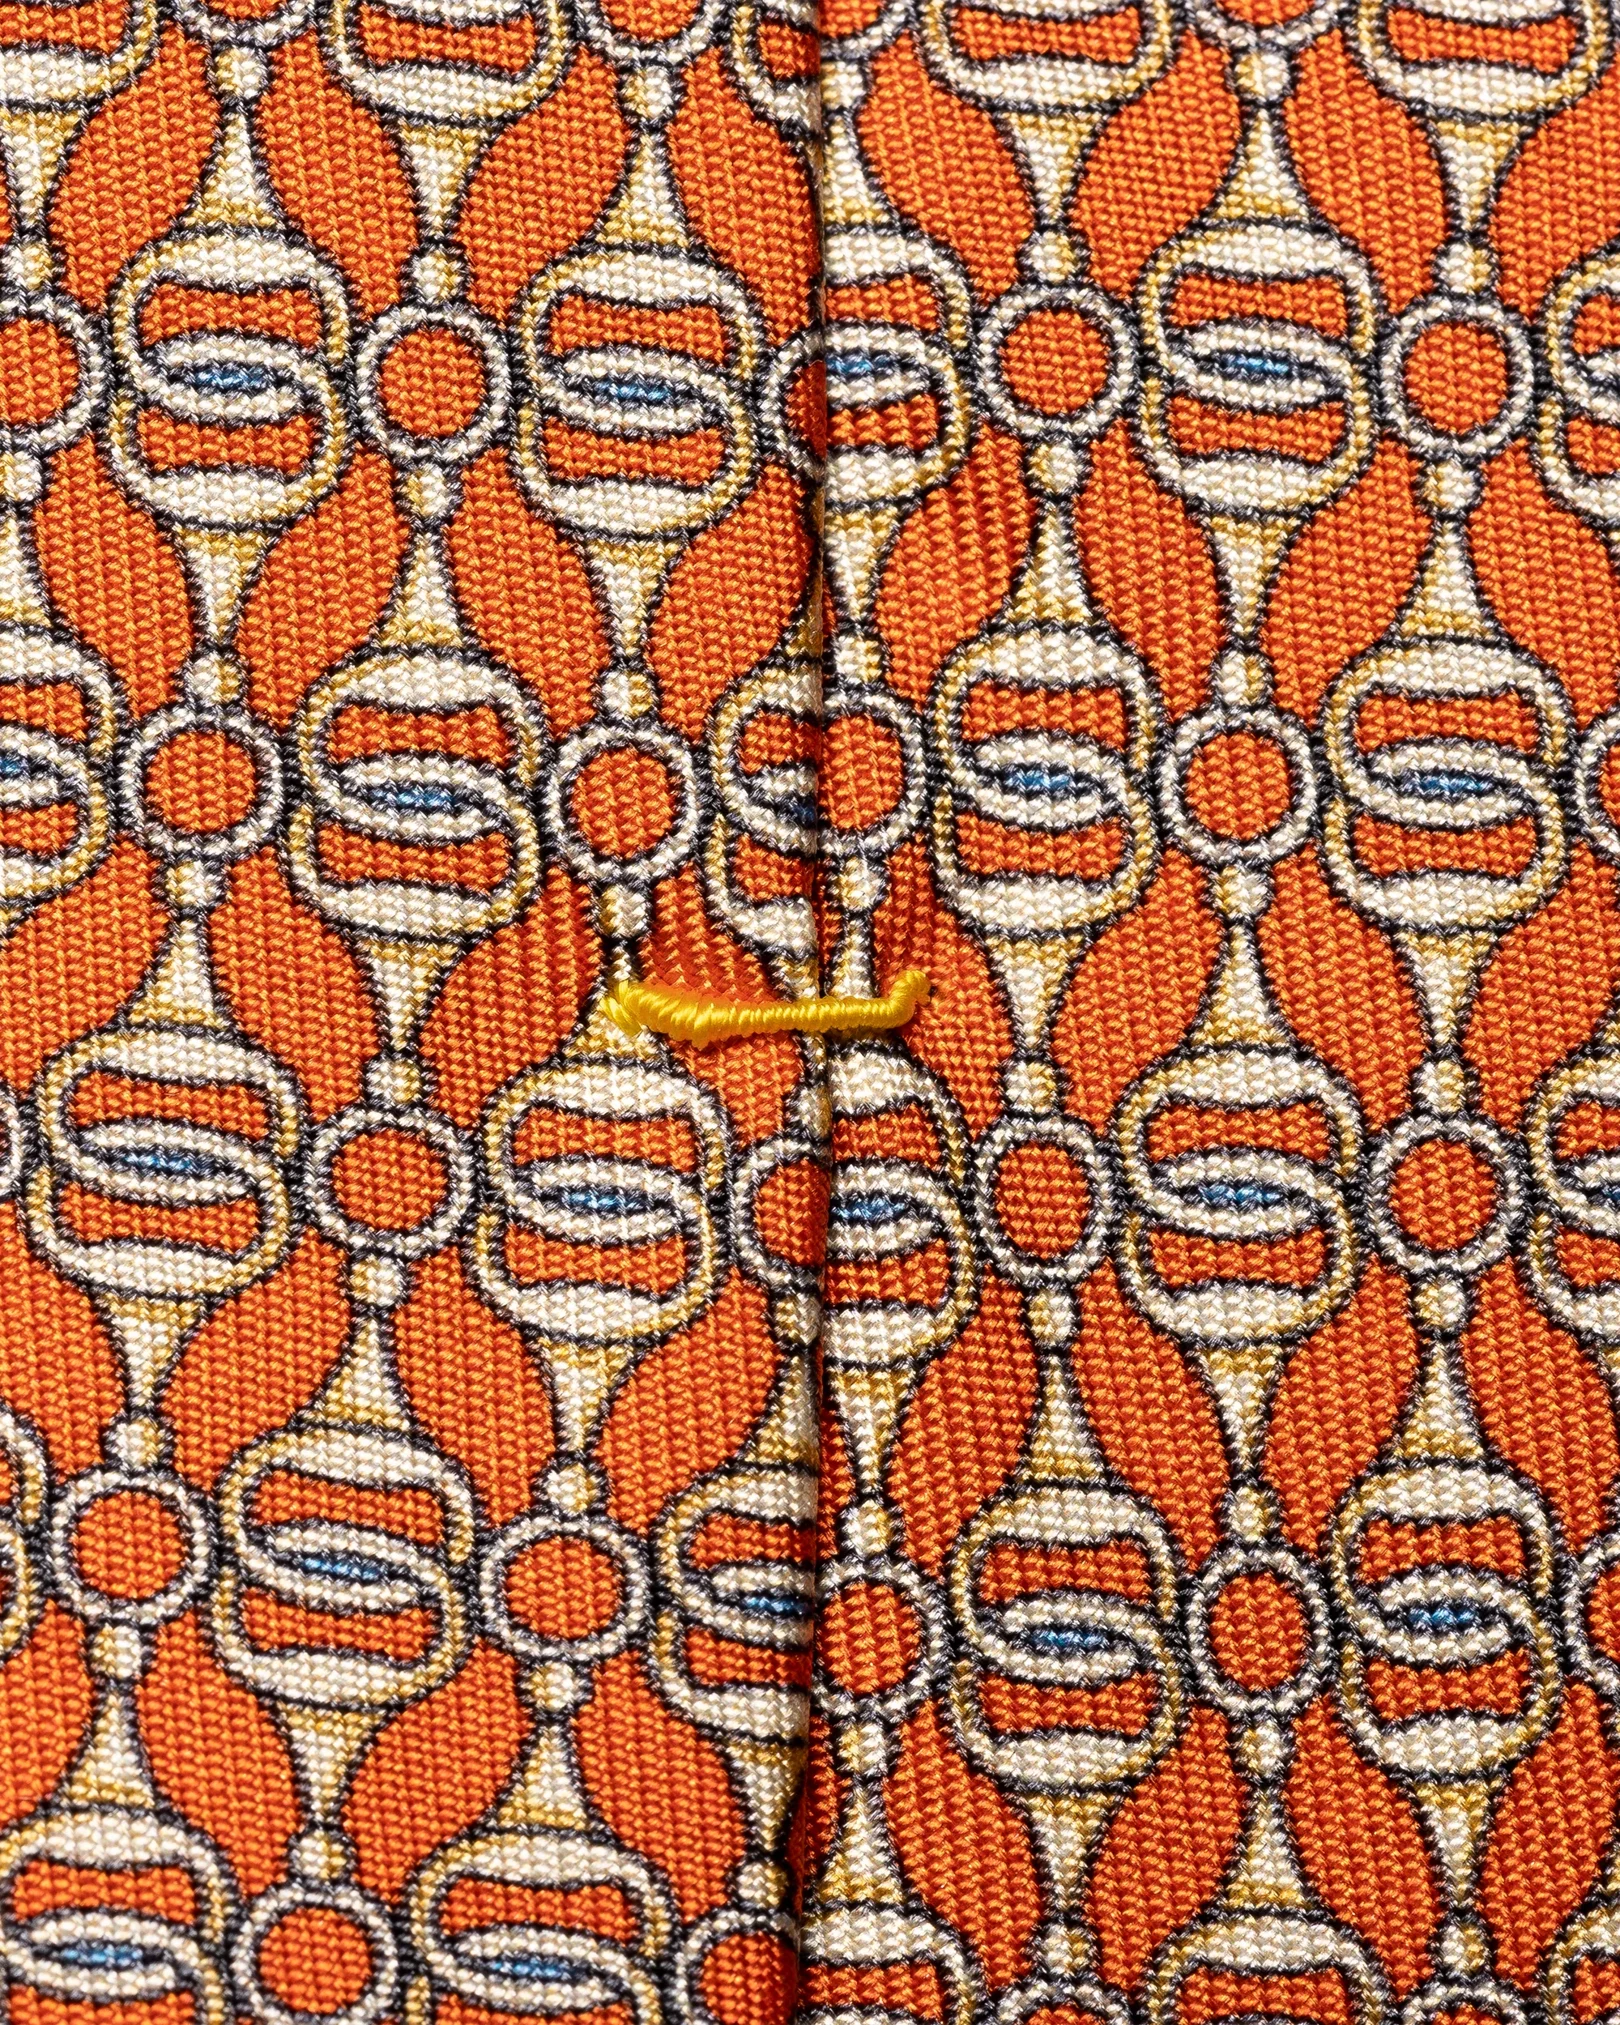 Eton - orange chain tie